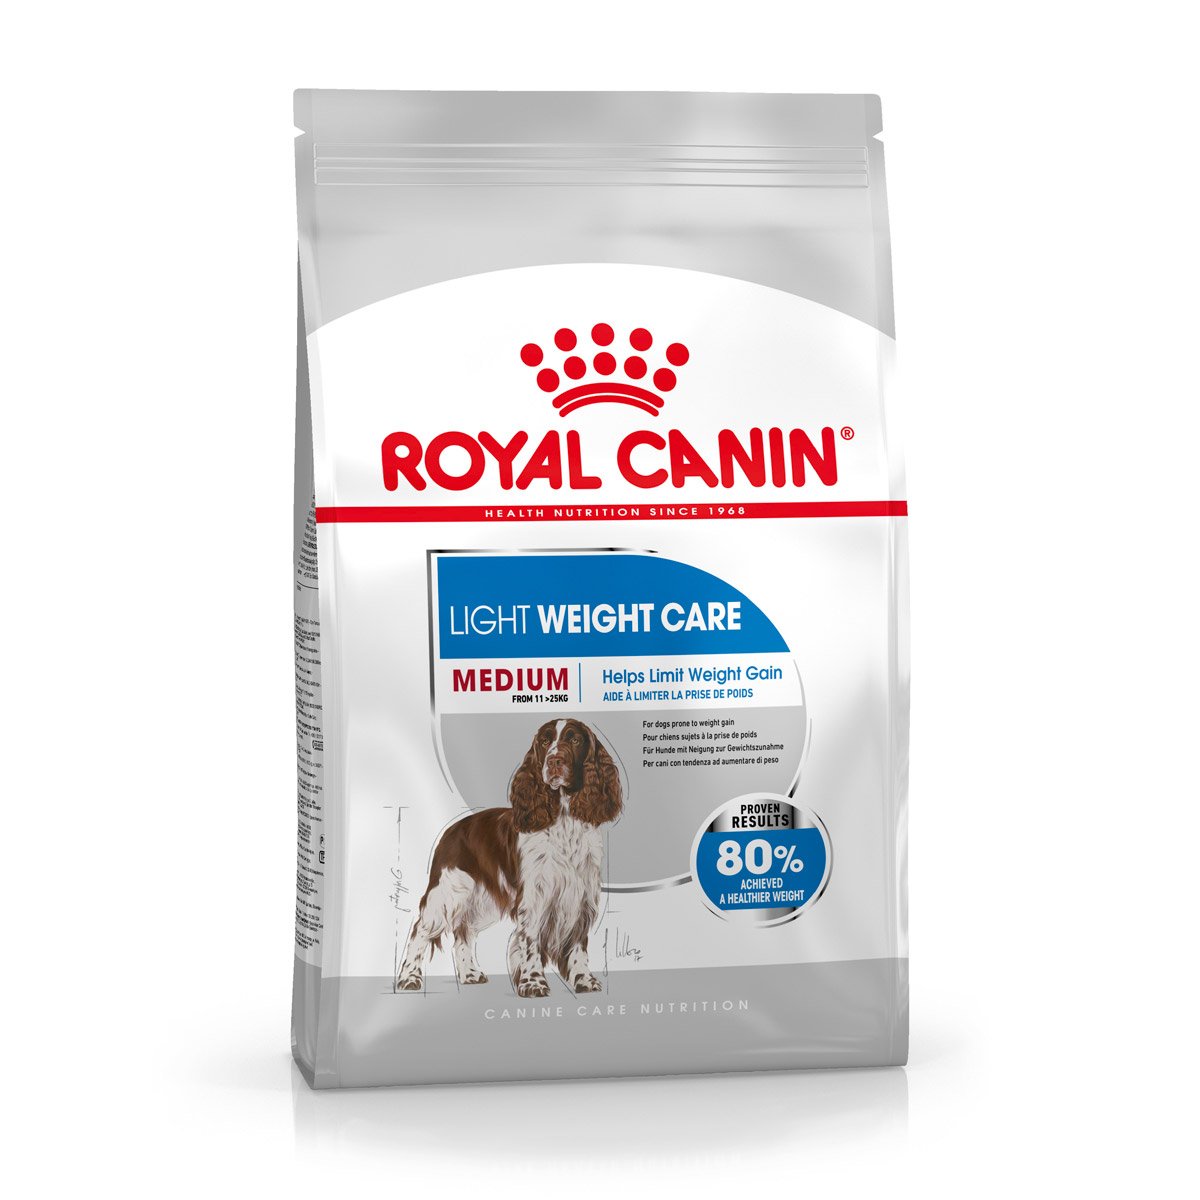 ROYAL CANIN LIGHT WEIGHT CARE MEDIUM Trockenfutter für zu Übergewicht neigenden Hunden 3 kg von Royal Canin